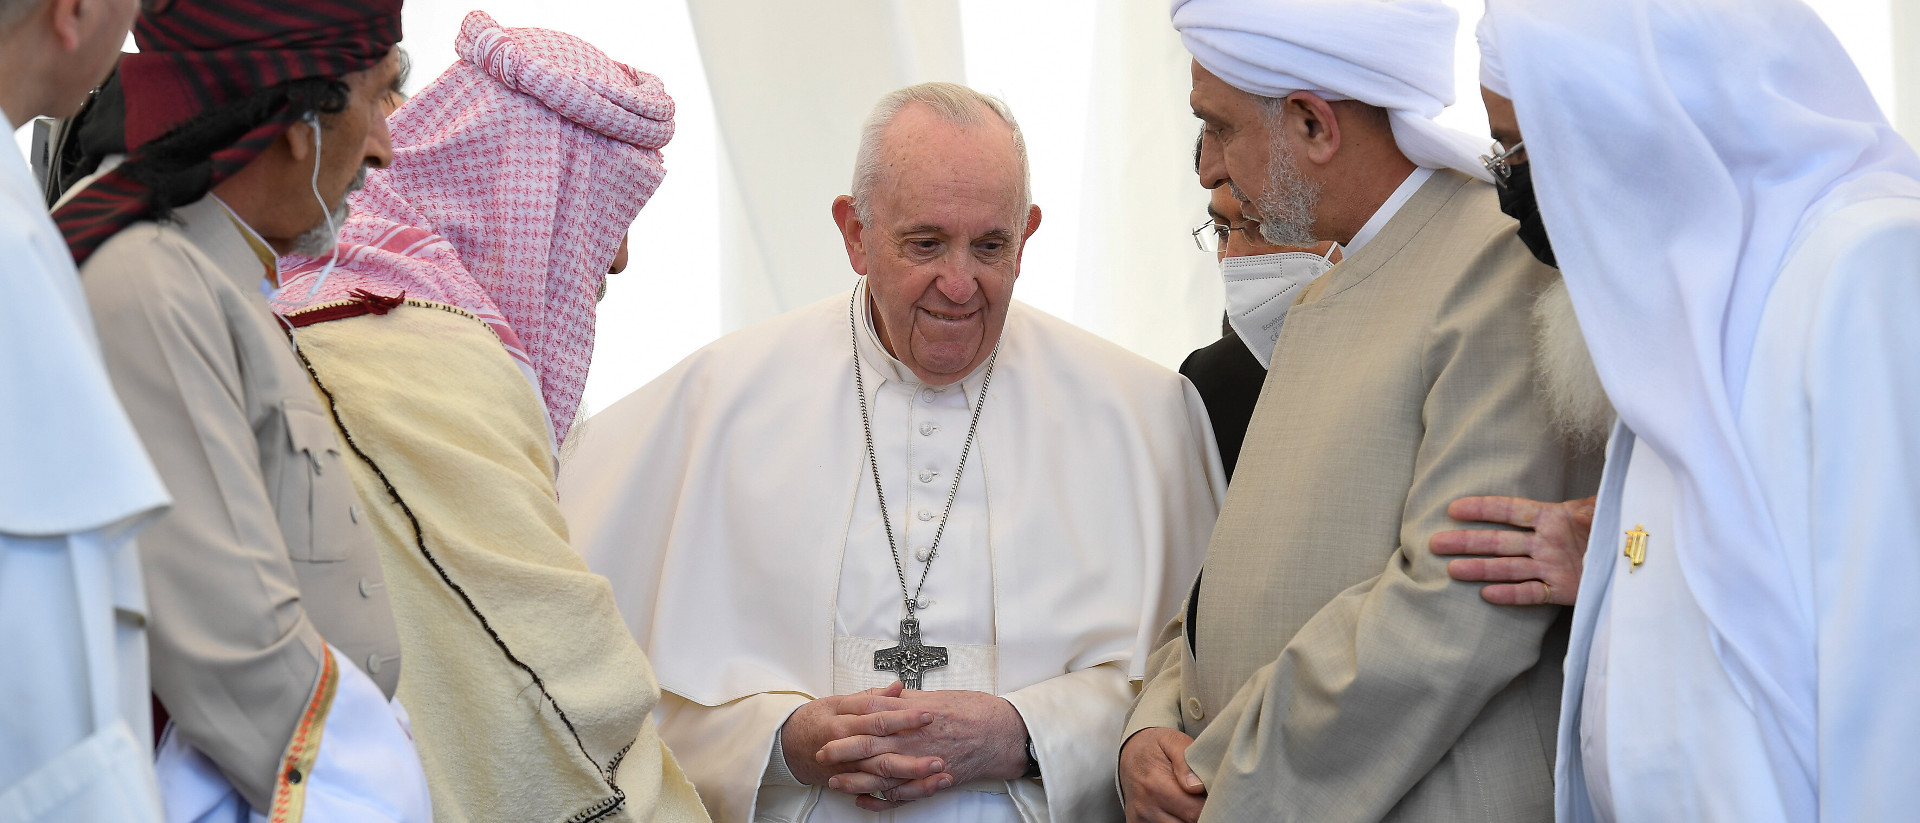 Papst Franziskus bei der Begegnung mit Vertretern unterschiedlicher Religionen während seiner Reise in den Irak am 6. März 2021 in der Ebene von Ur.